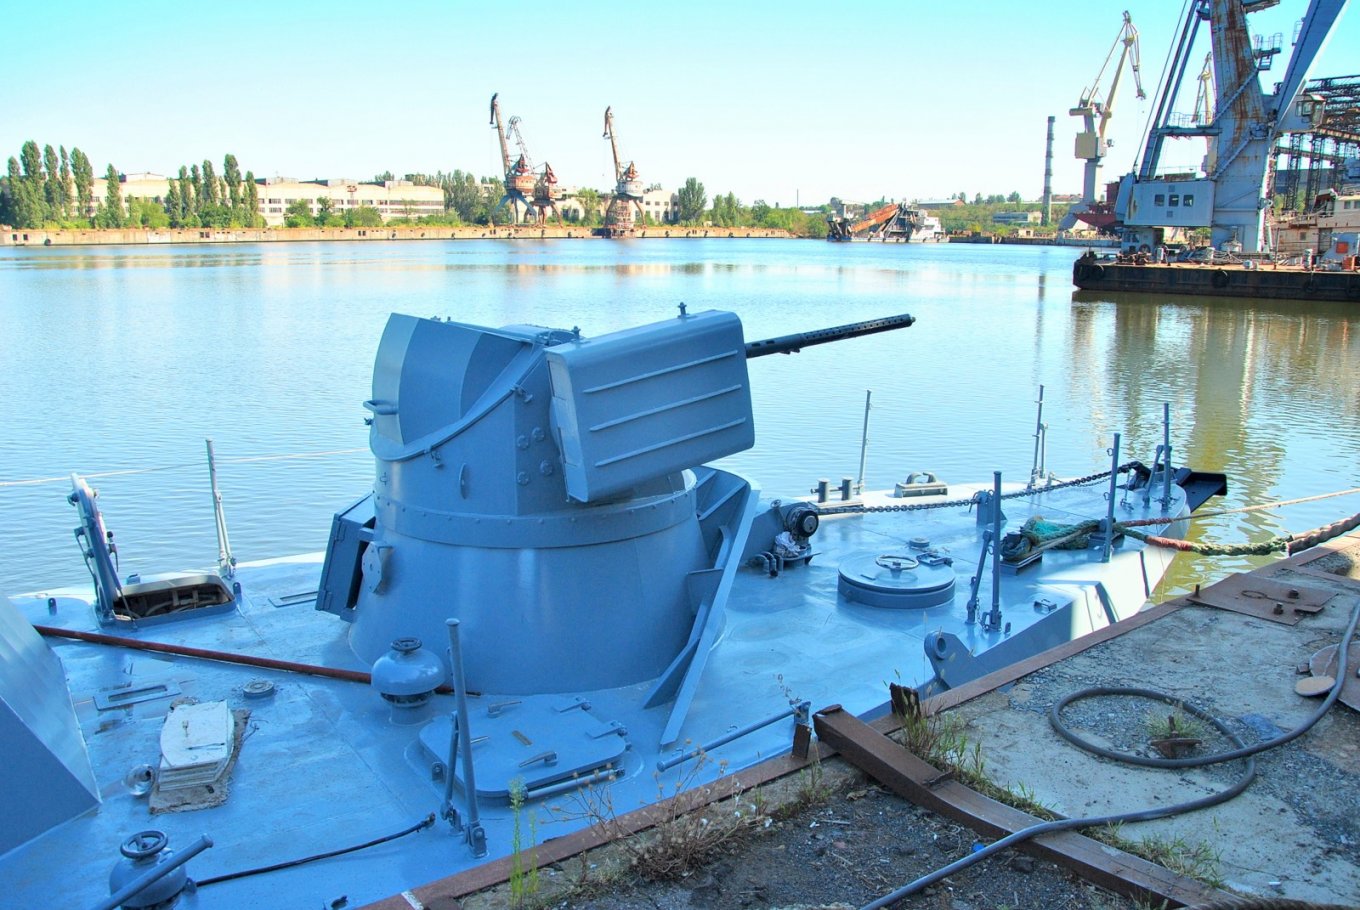 Обстрелянный россиянами катер «Бердянск» отремонтировали, часть корпуса отдадут в музей, фото — Укроборонпром